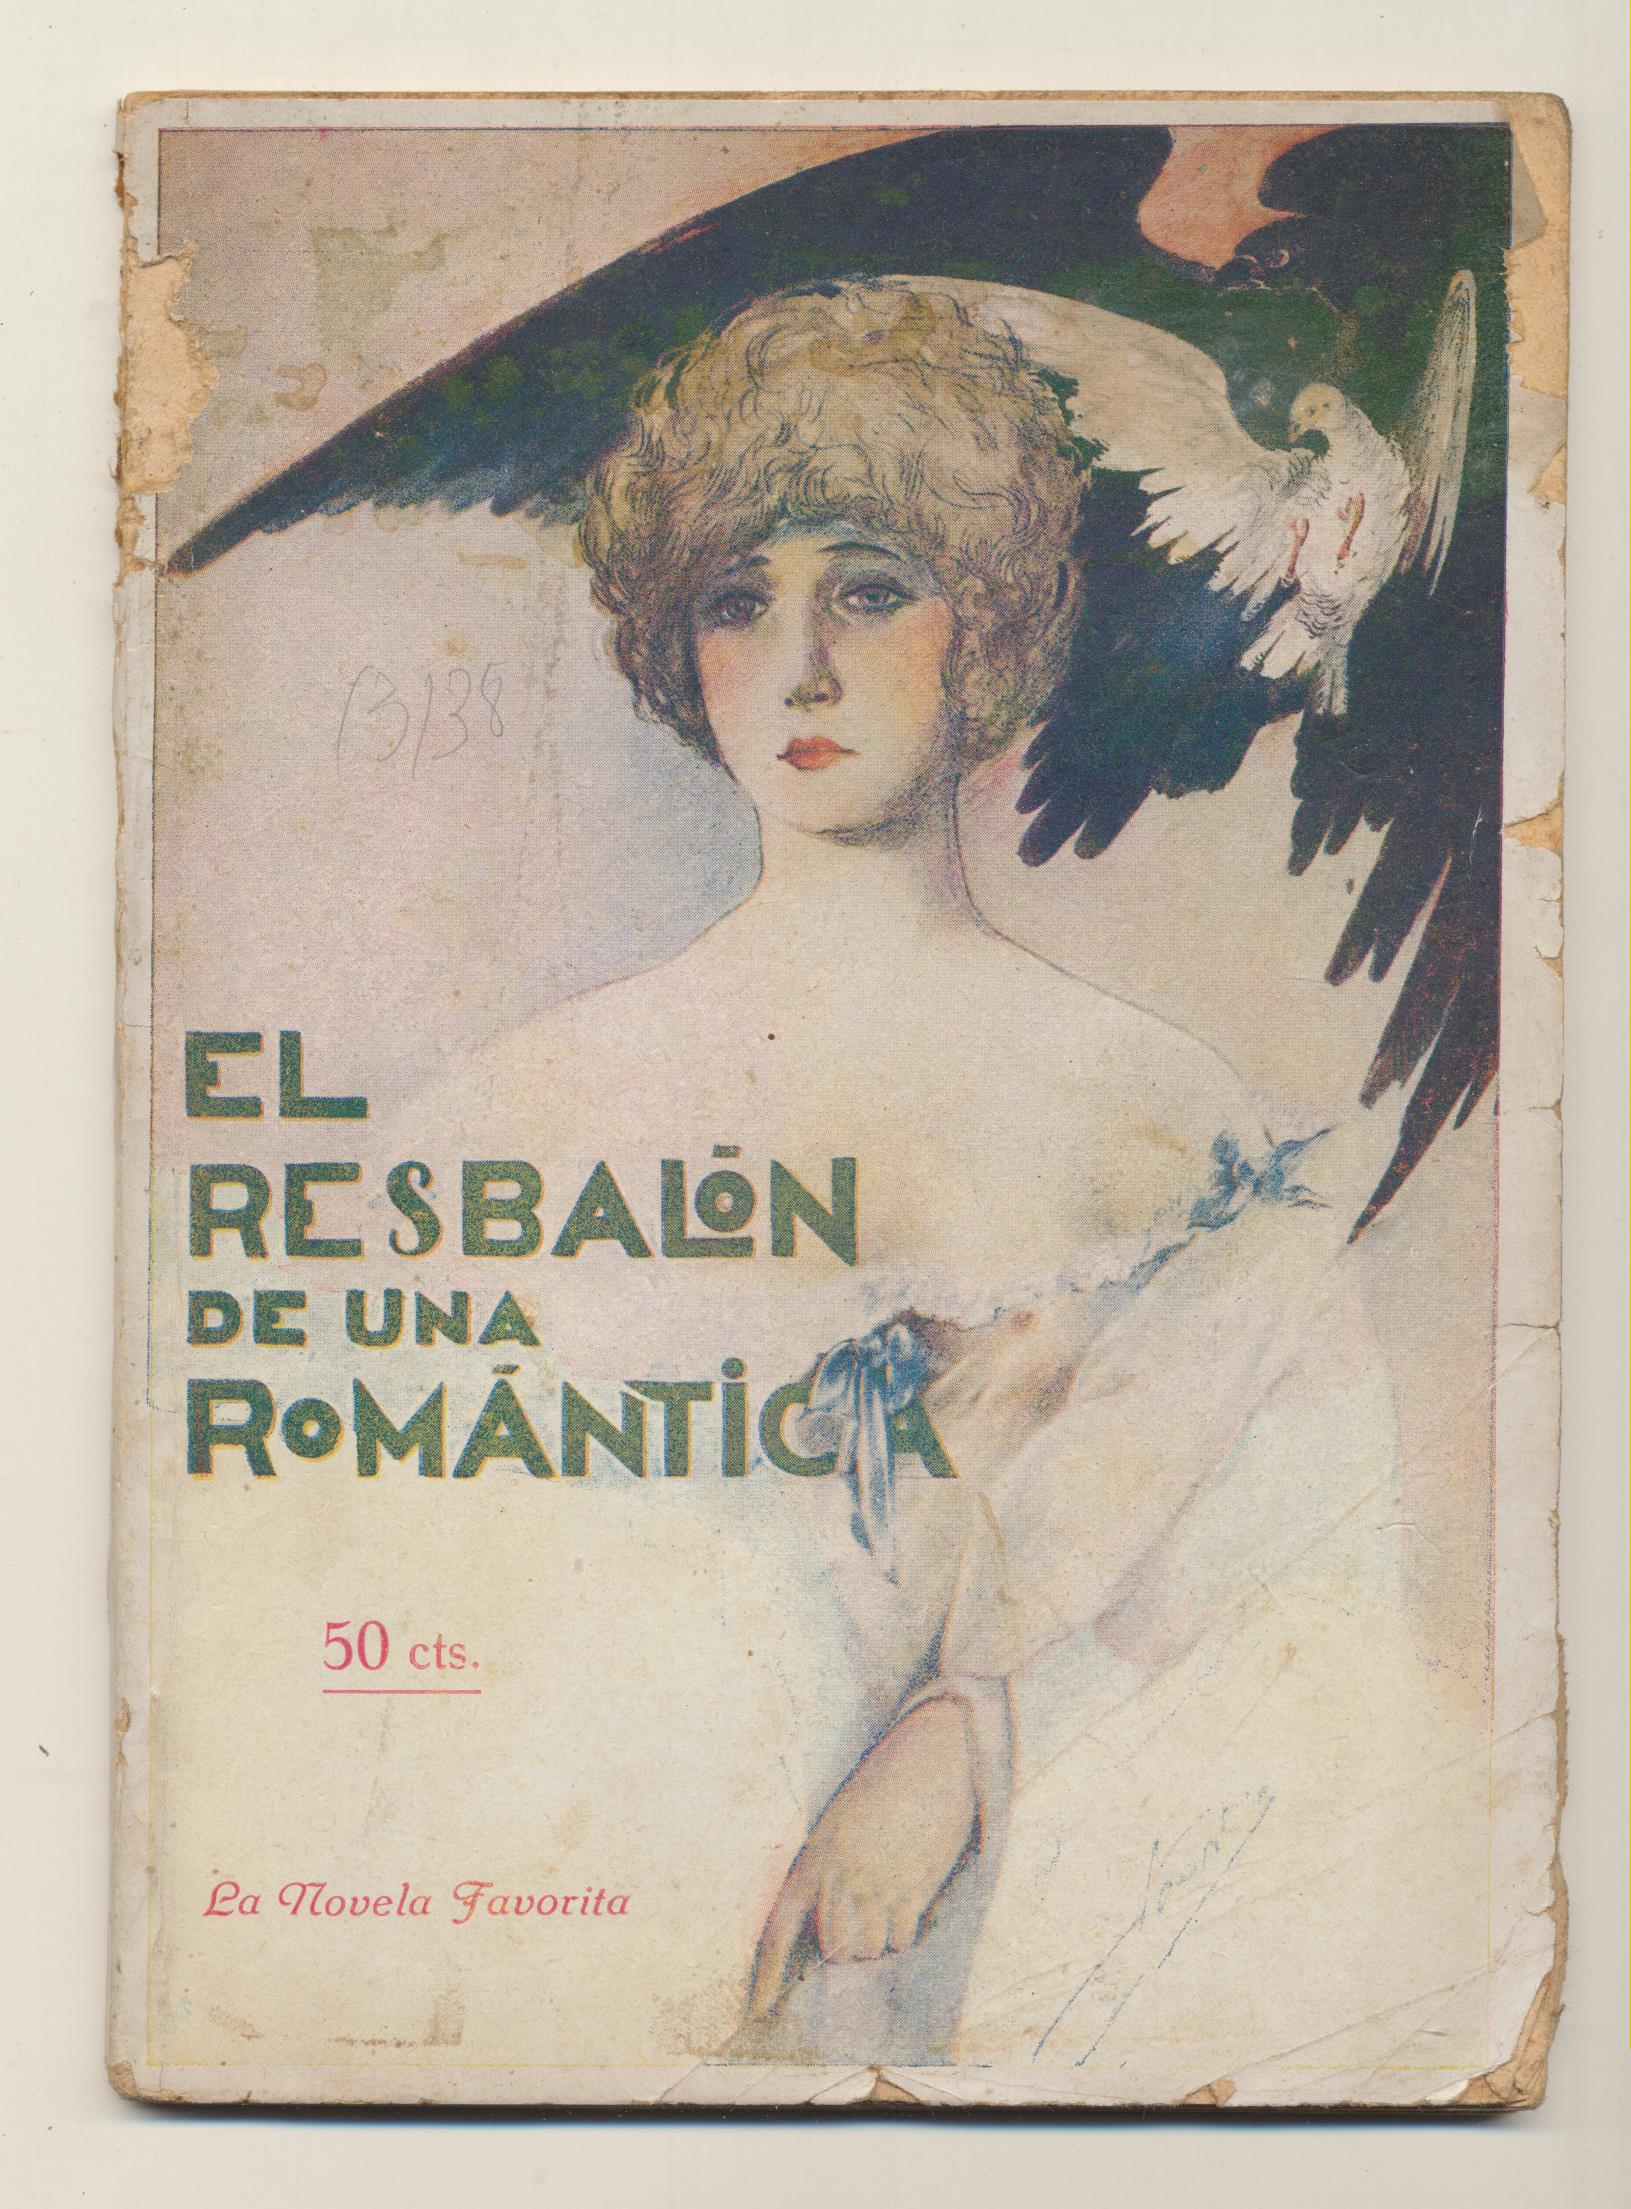 La Novela Favorita. El Resbalón de una Romántica. Ediciones Bistagne